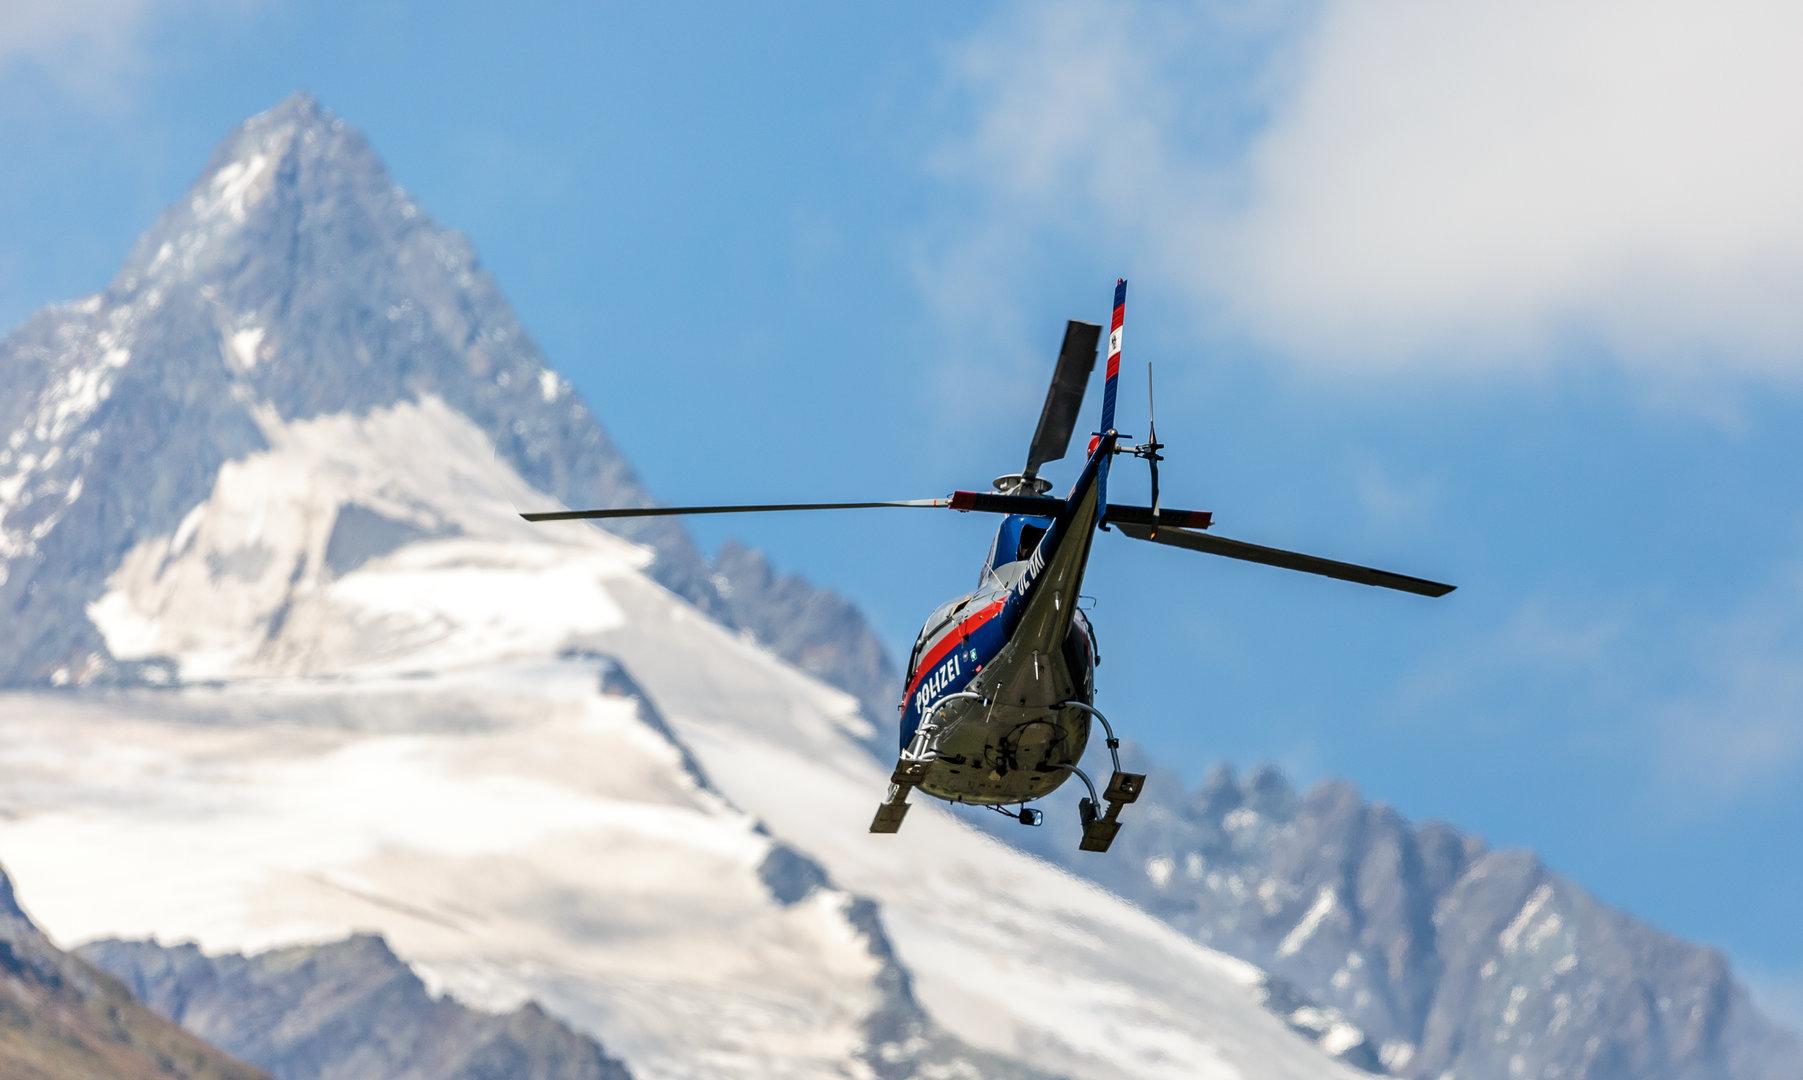 Zwei Menschen binnen zweier Tage bei Alpinunfällen in Kärnten verstorben